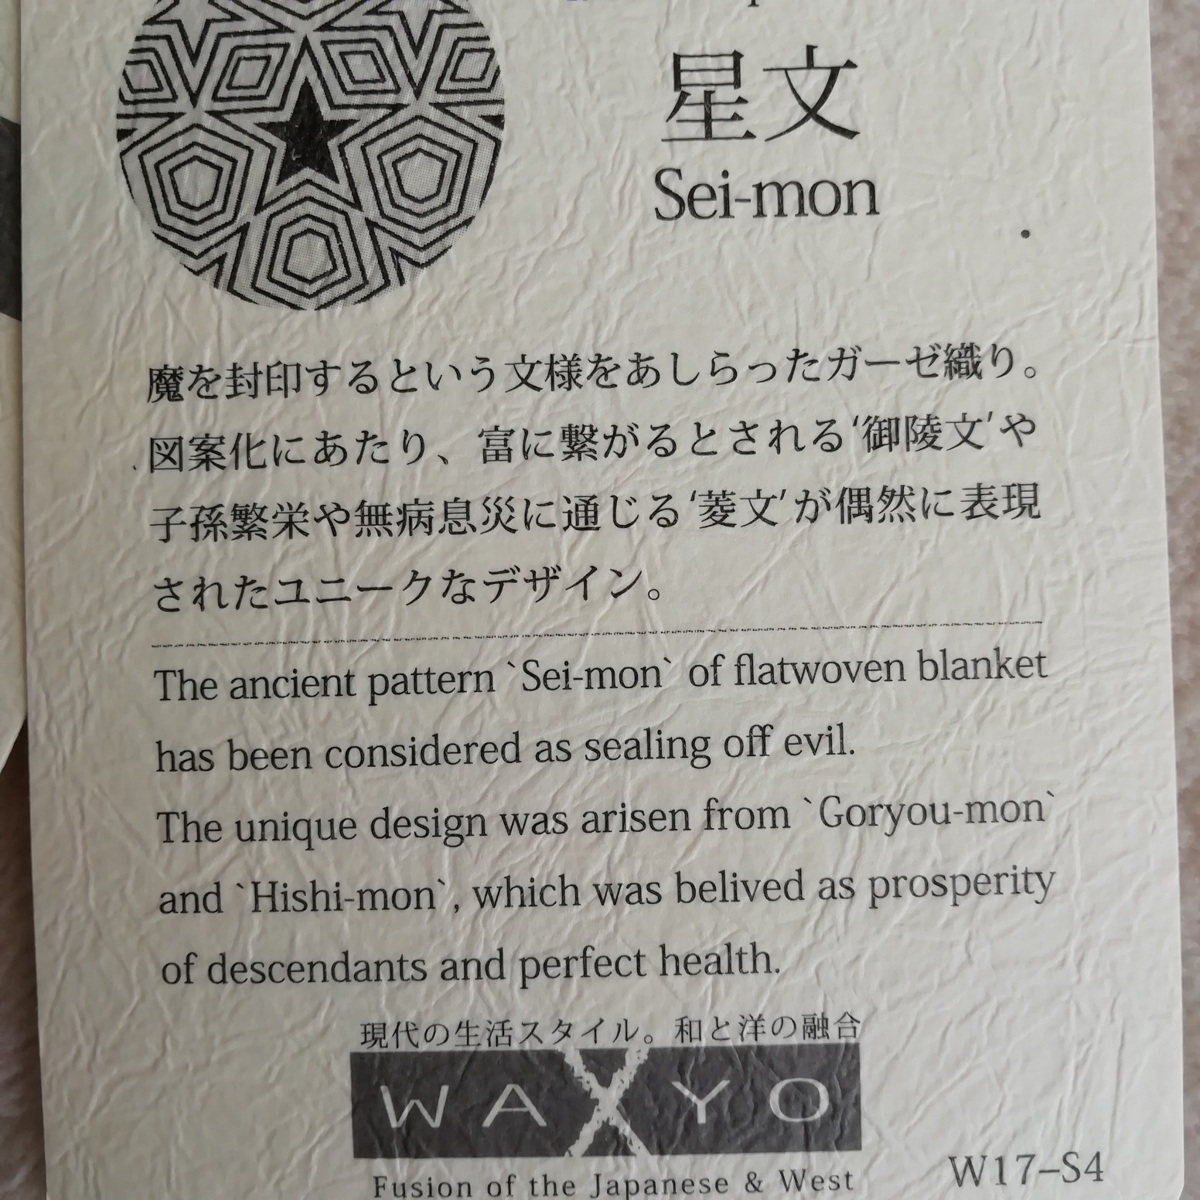  новый товар роман маленький криптомерия WAXYO нежный марля махровое покрывало звезда документ рисунок 140×190cm сделано в Японии 